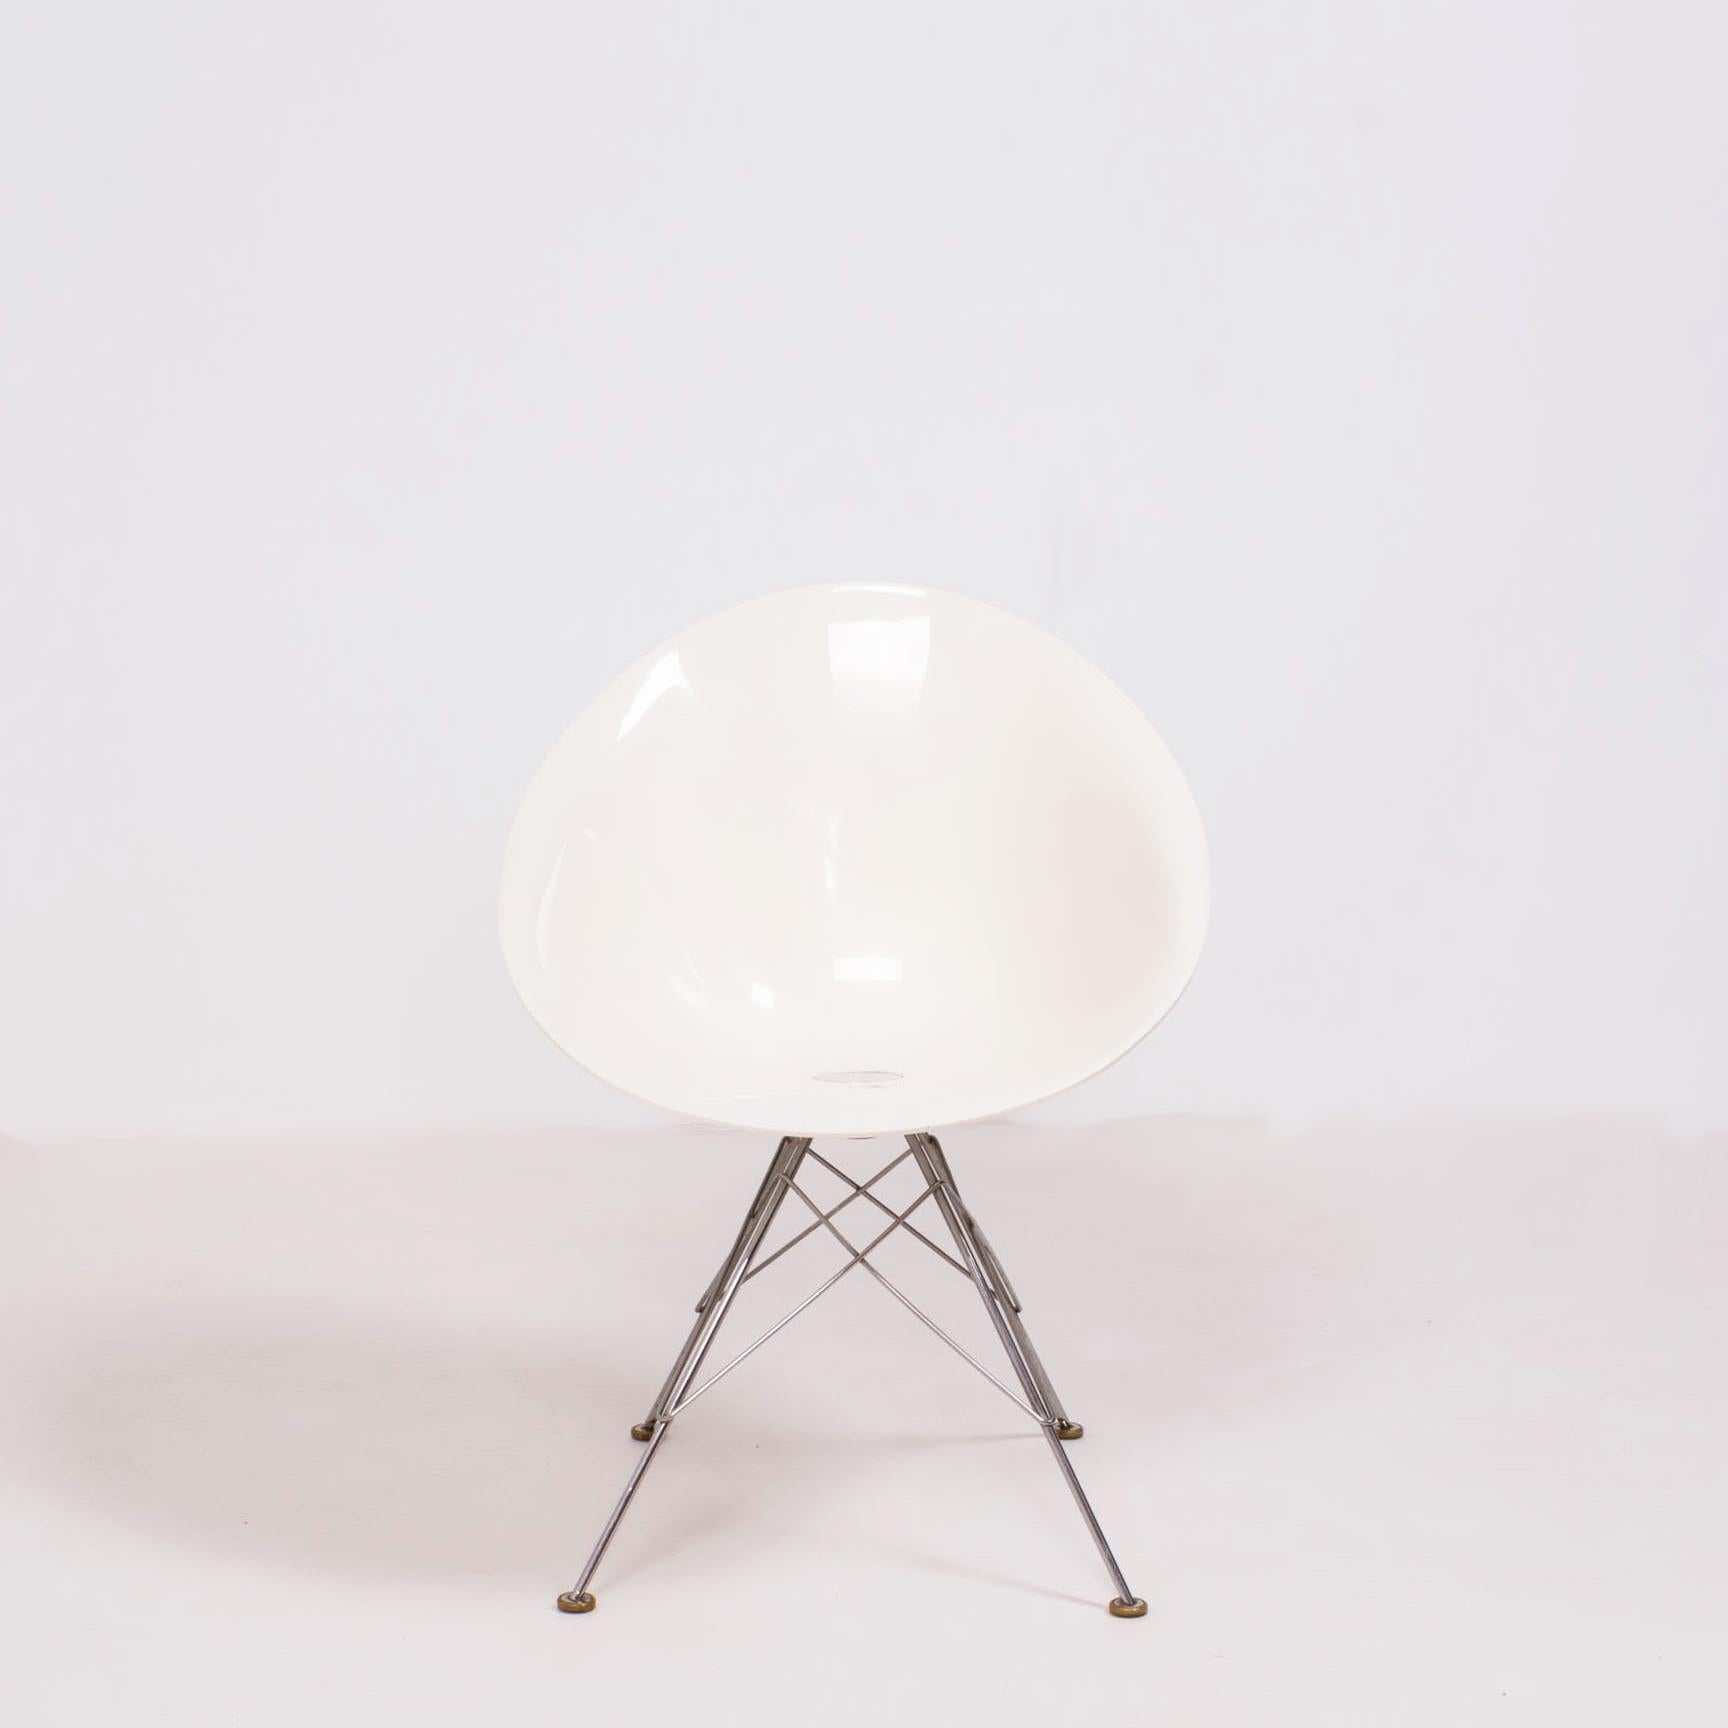 Conçue à l'origine par Philippe Starck pour Kartell en 1999, la chaise Eros/S s'inspire des années 1960 mais est rapidement devenue un classique du design moderne.

De forme organique, l'assise ovale est fabriquée en polycarbonate blanc et repose